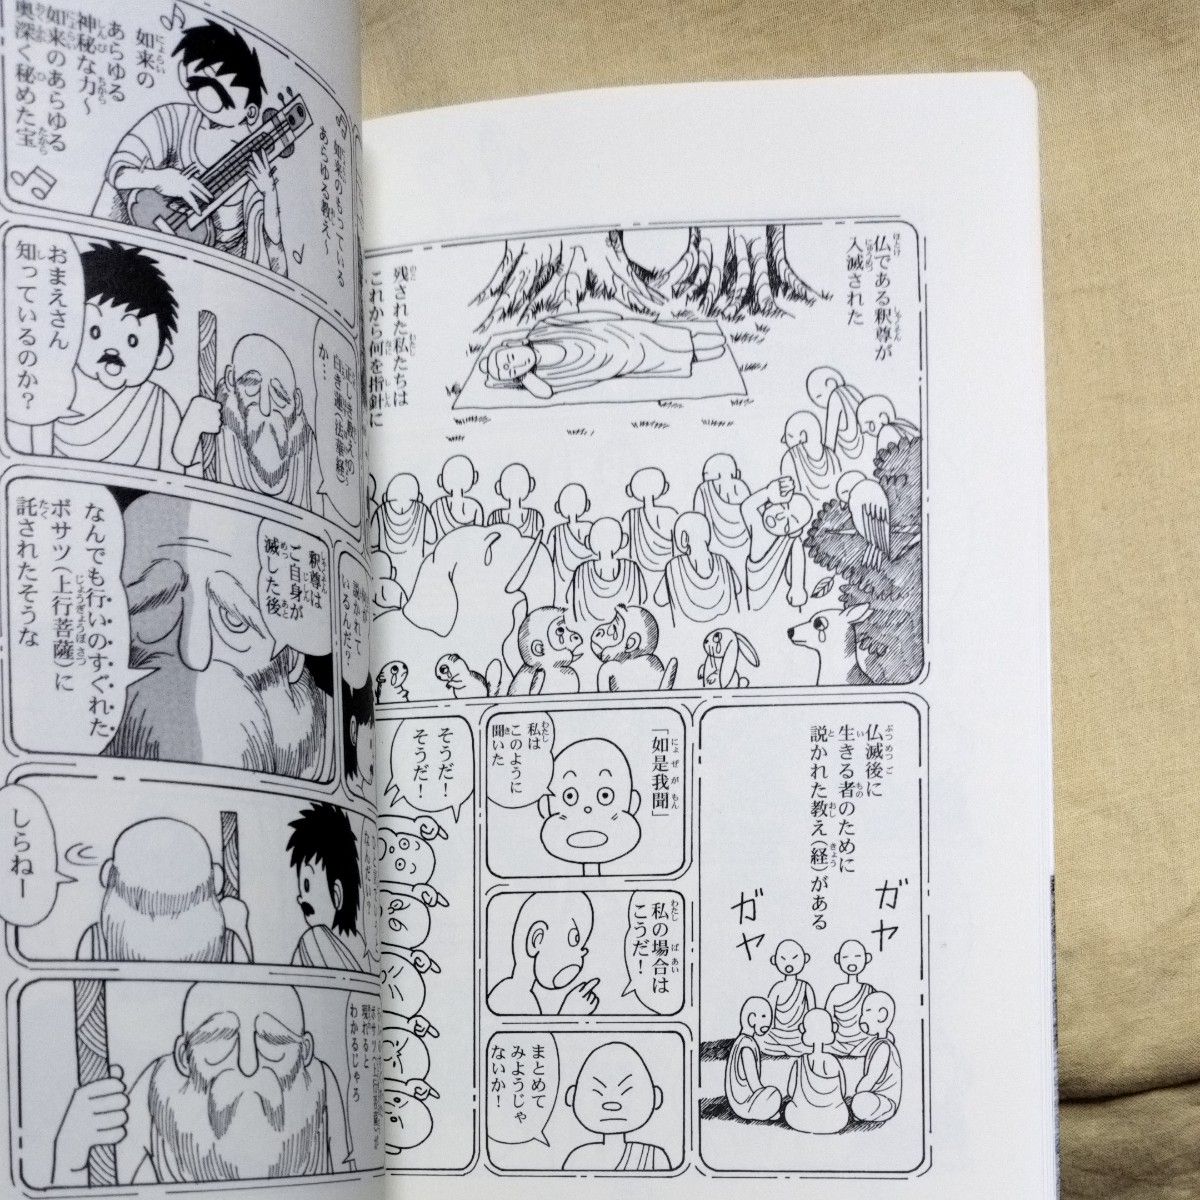 漫画「時空を超えて」日蓮・日隆